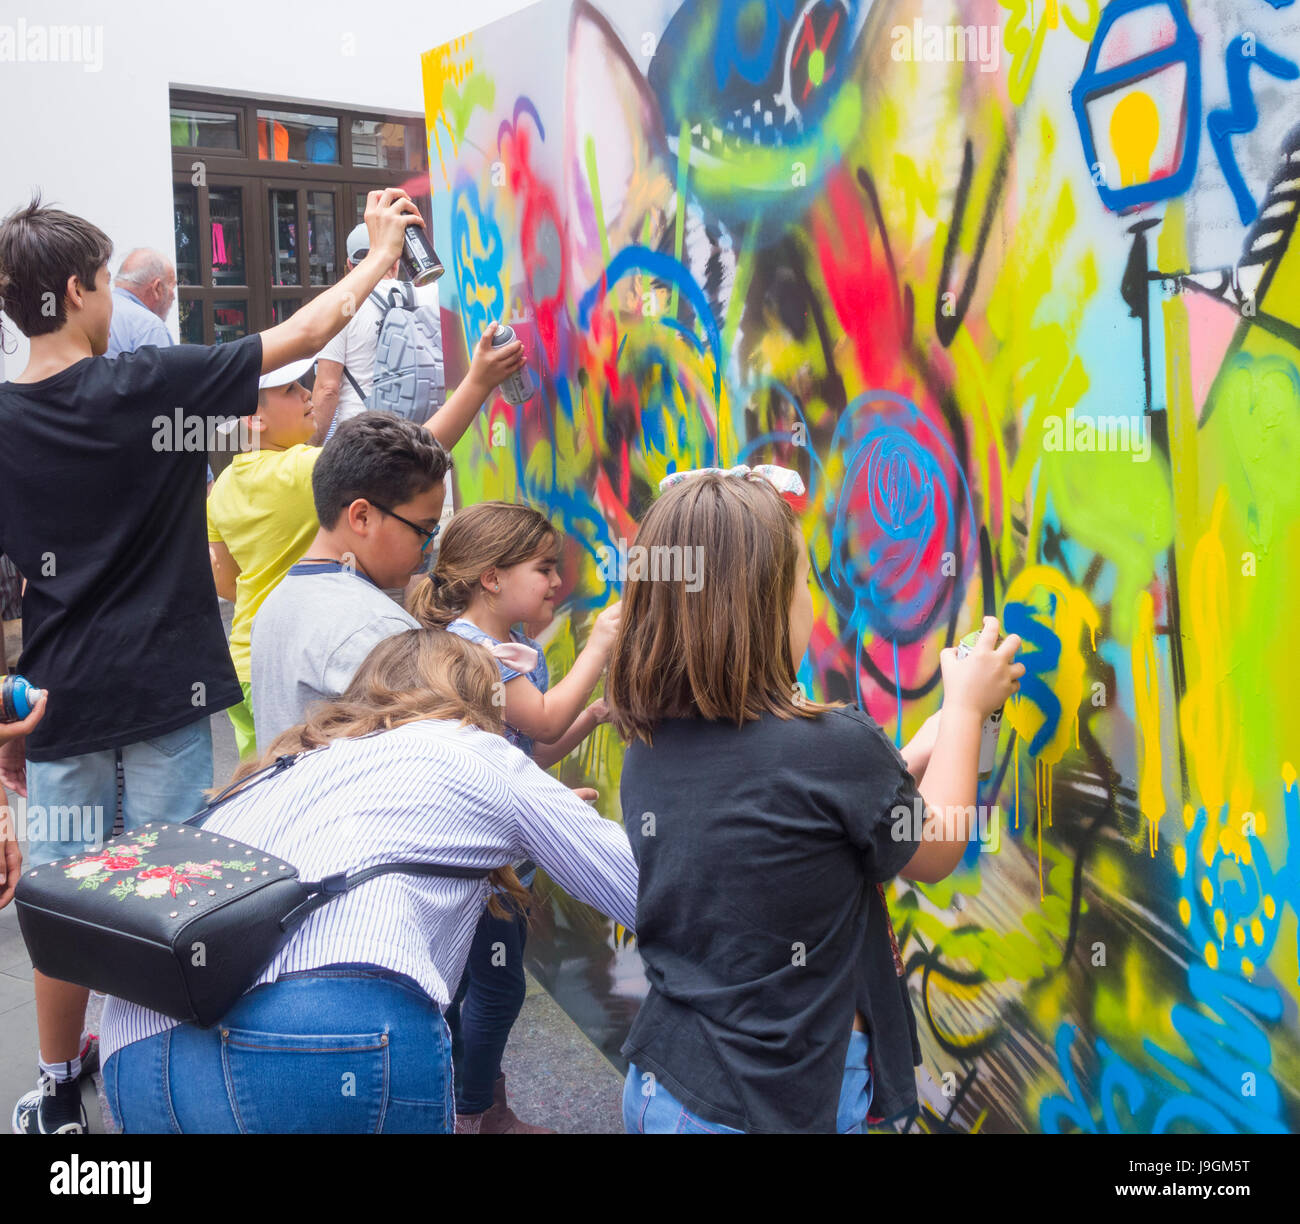 Graffiti-Unterricht für Kinder im Streetart-Event in Spanien  Stockfotografie - Alamy